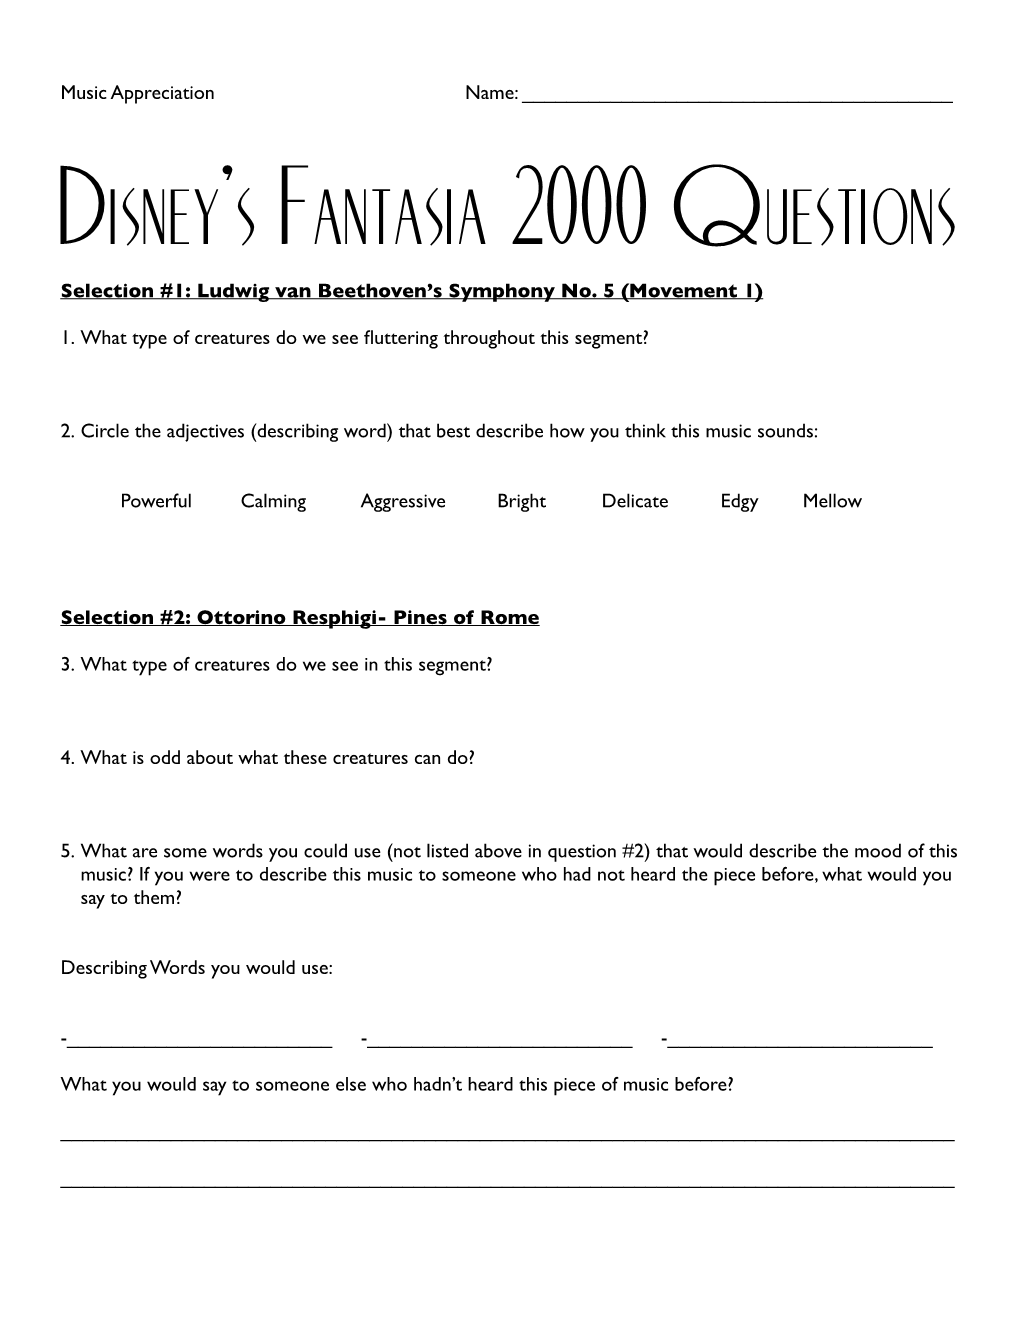 Disney's Fantasia 2000 Questions